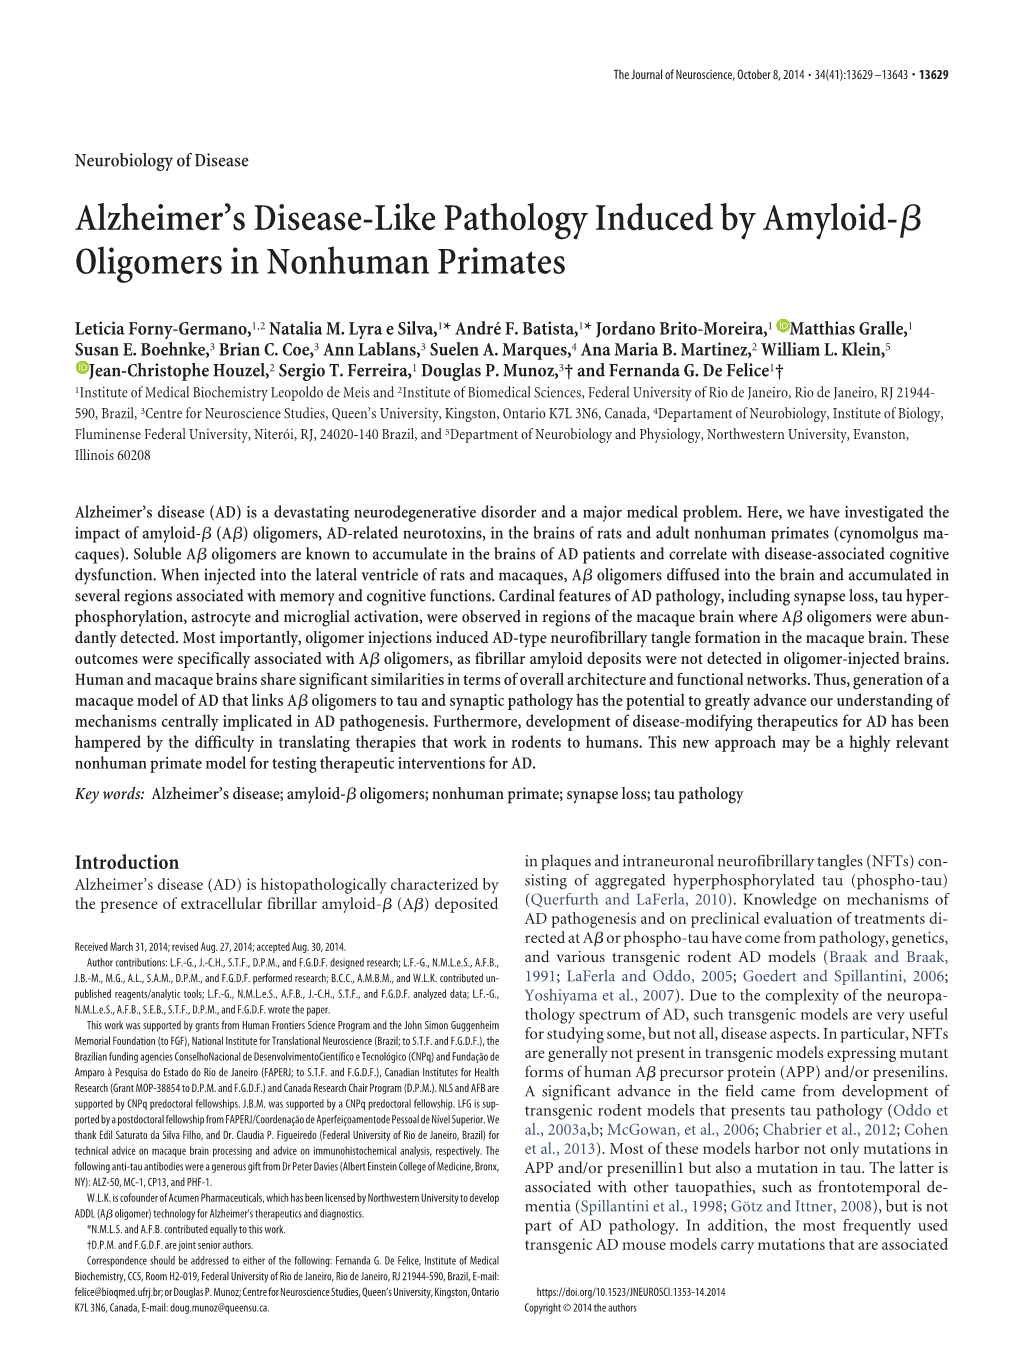 Alzheimer's Disease-Like Pathology Induced